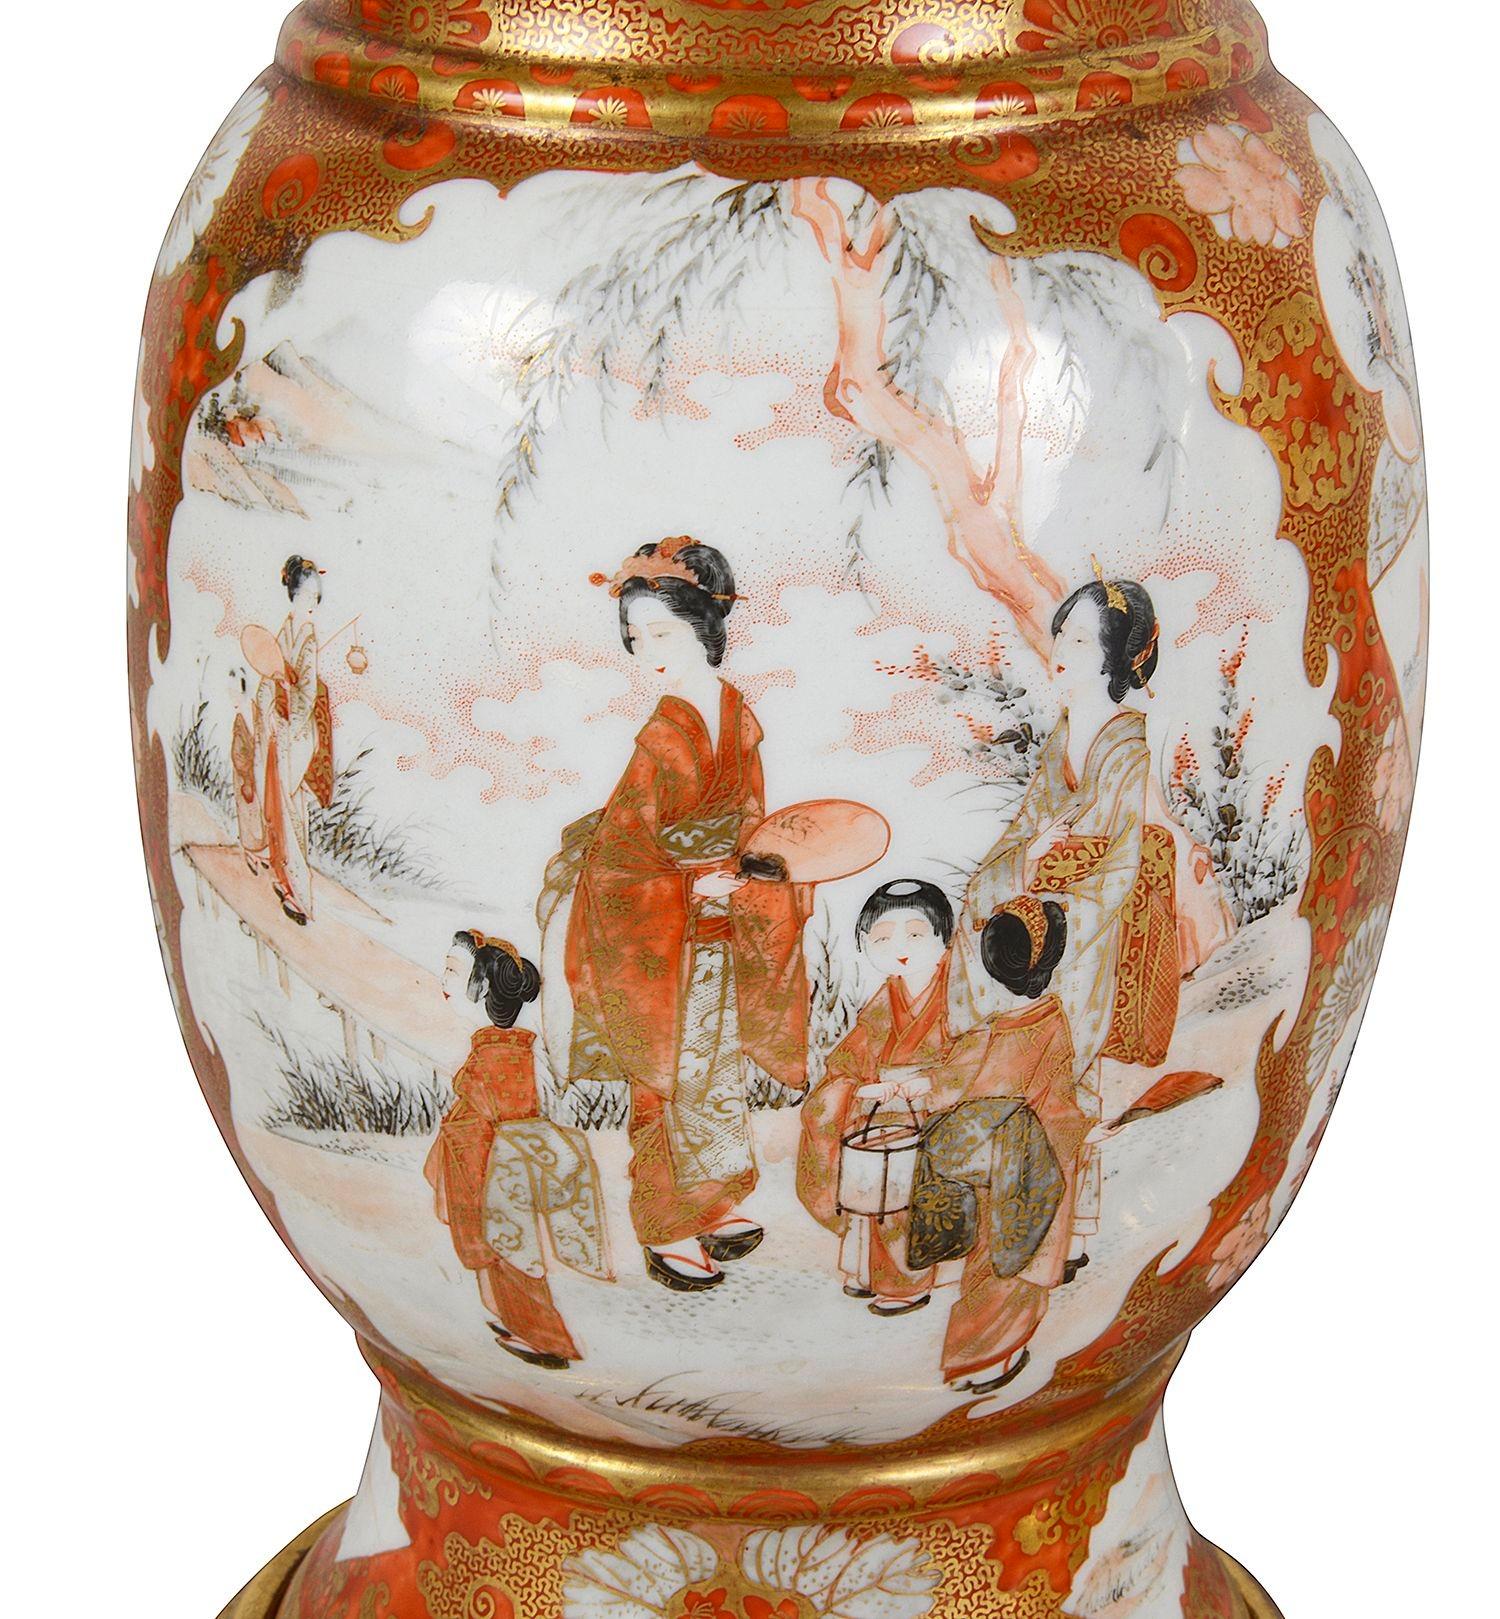 Ein feines Paar japanischer Kutani-Porzellanlampen aus dem späten 19. Jahrhundert. Jede hat den klassischen orangefarbenen Grund mit klassischem vergoldetem Rollendekor. Der Einsatz hatte gemalte Tafeln, die Szenen von Geisha-Mädchen auf einer